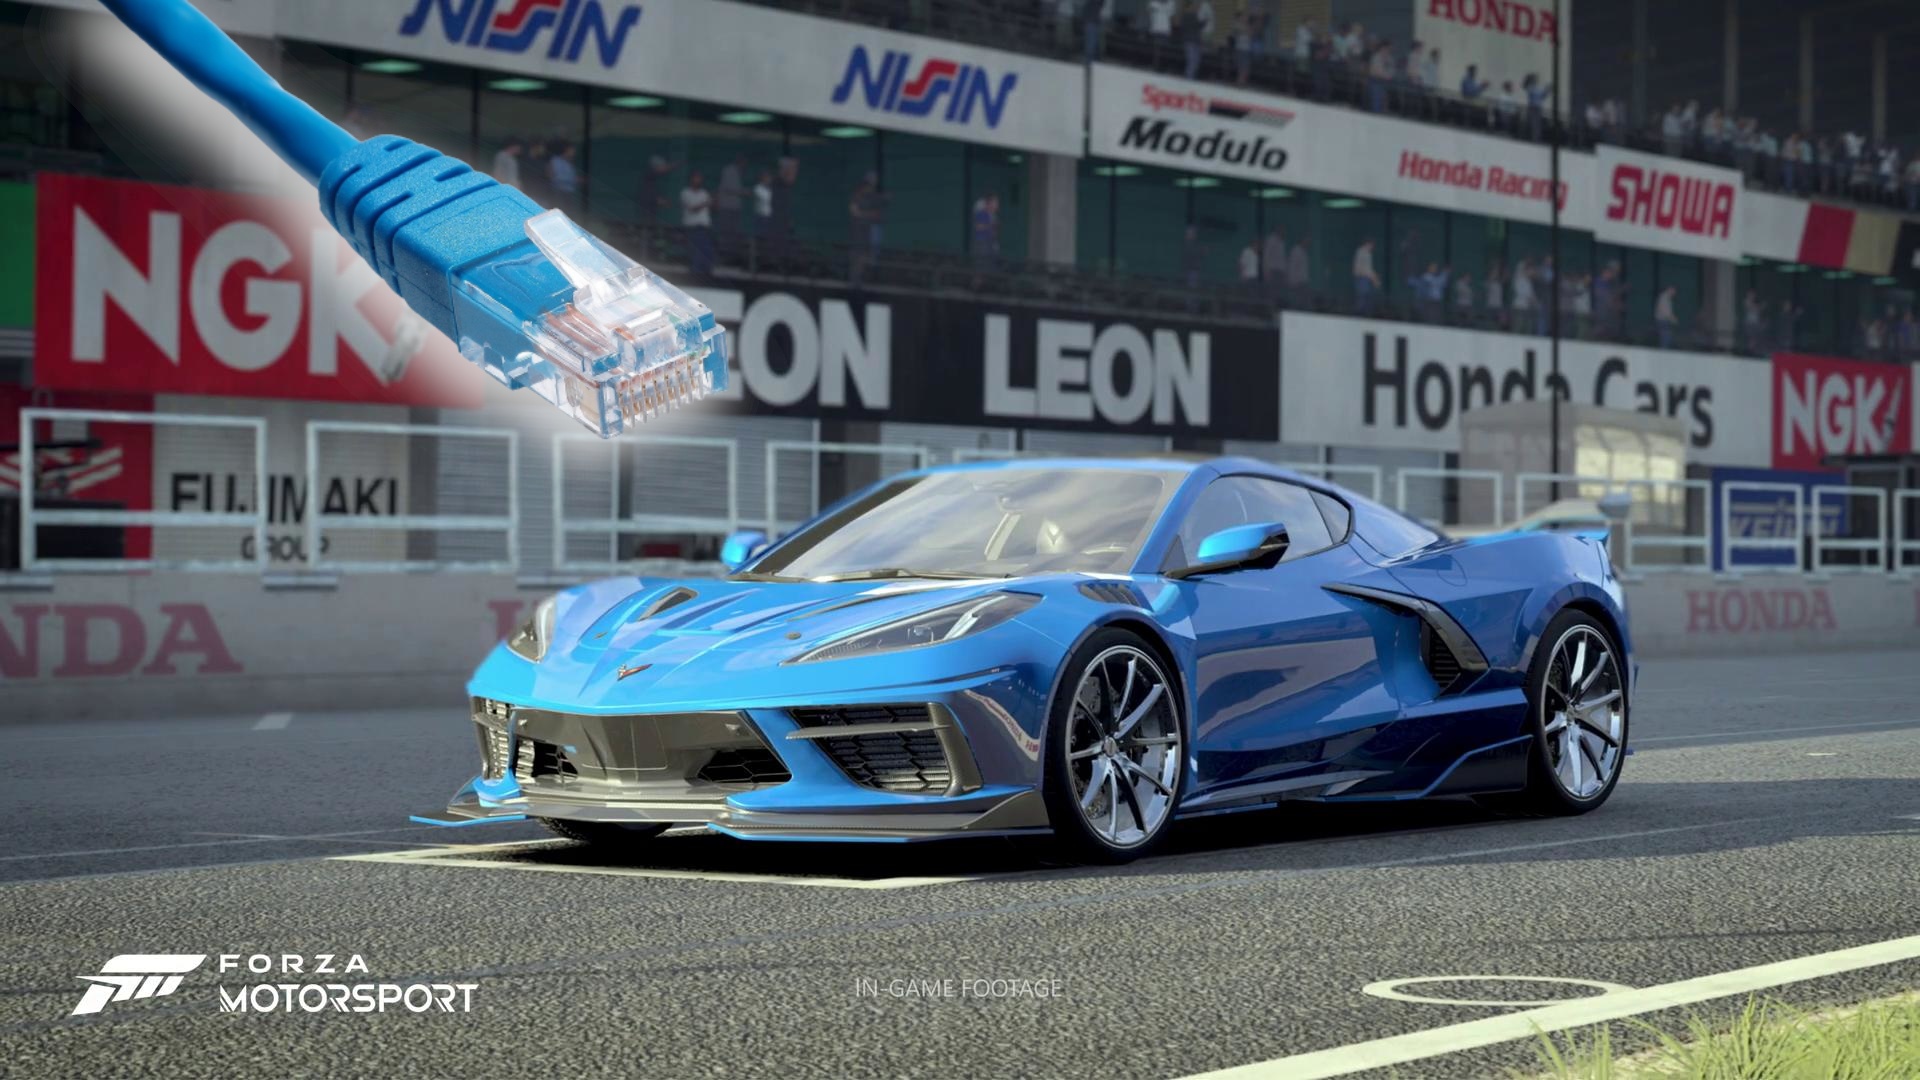 Kann man Forza Motorsport offline spielen? Ja, aber es gibt einen Haken